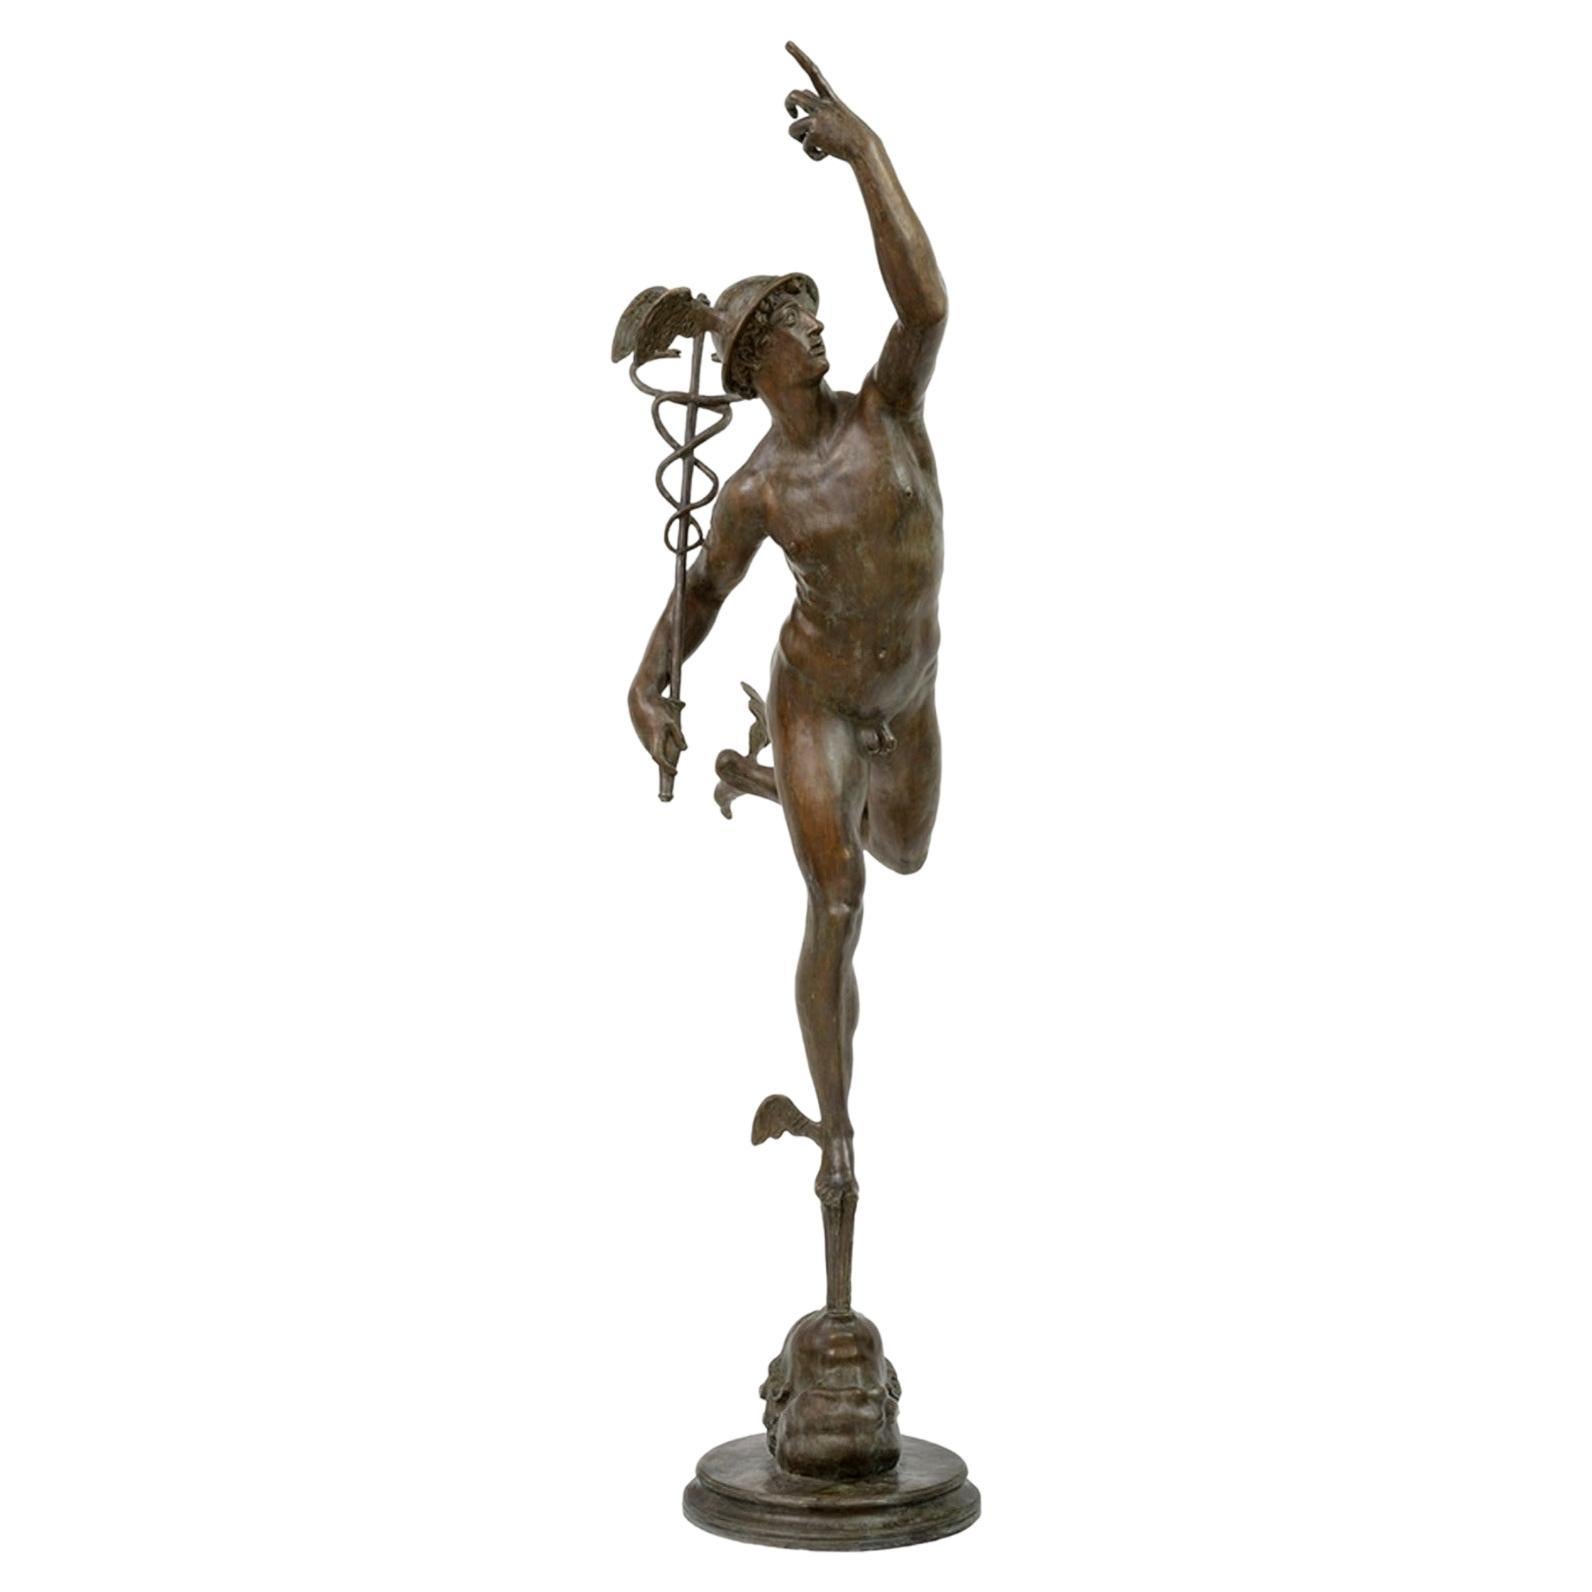 Außergewöhnliche Queckskulptur aus Bronze, 20. Jahrhundert